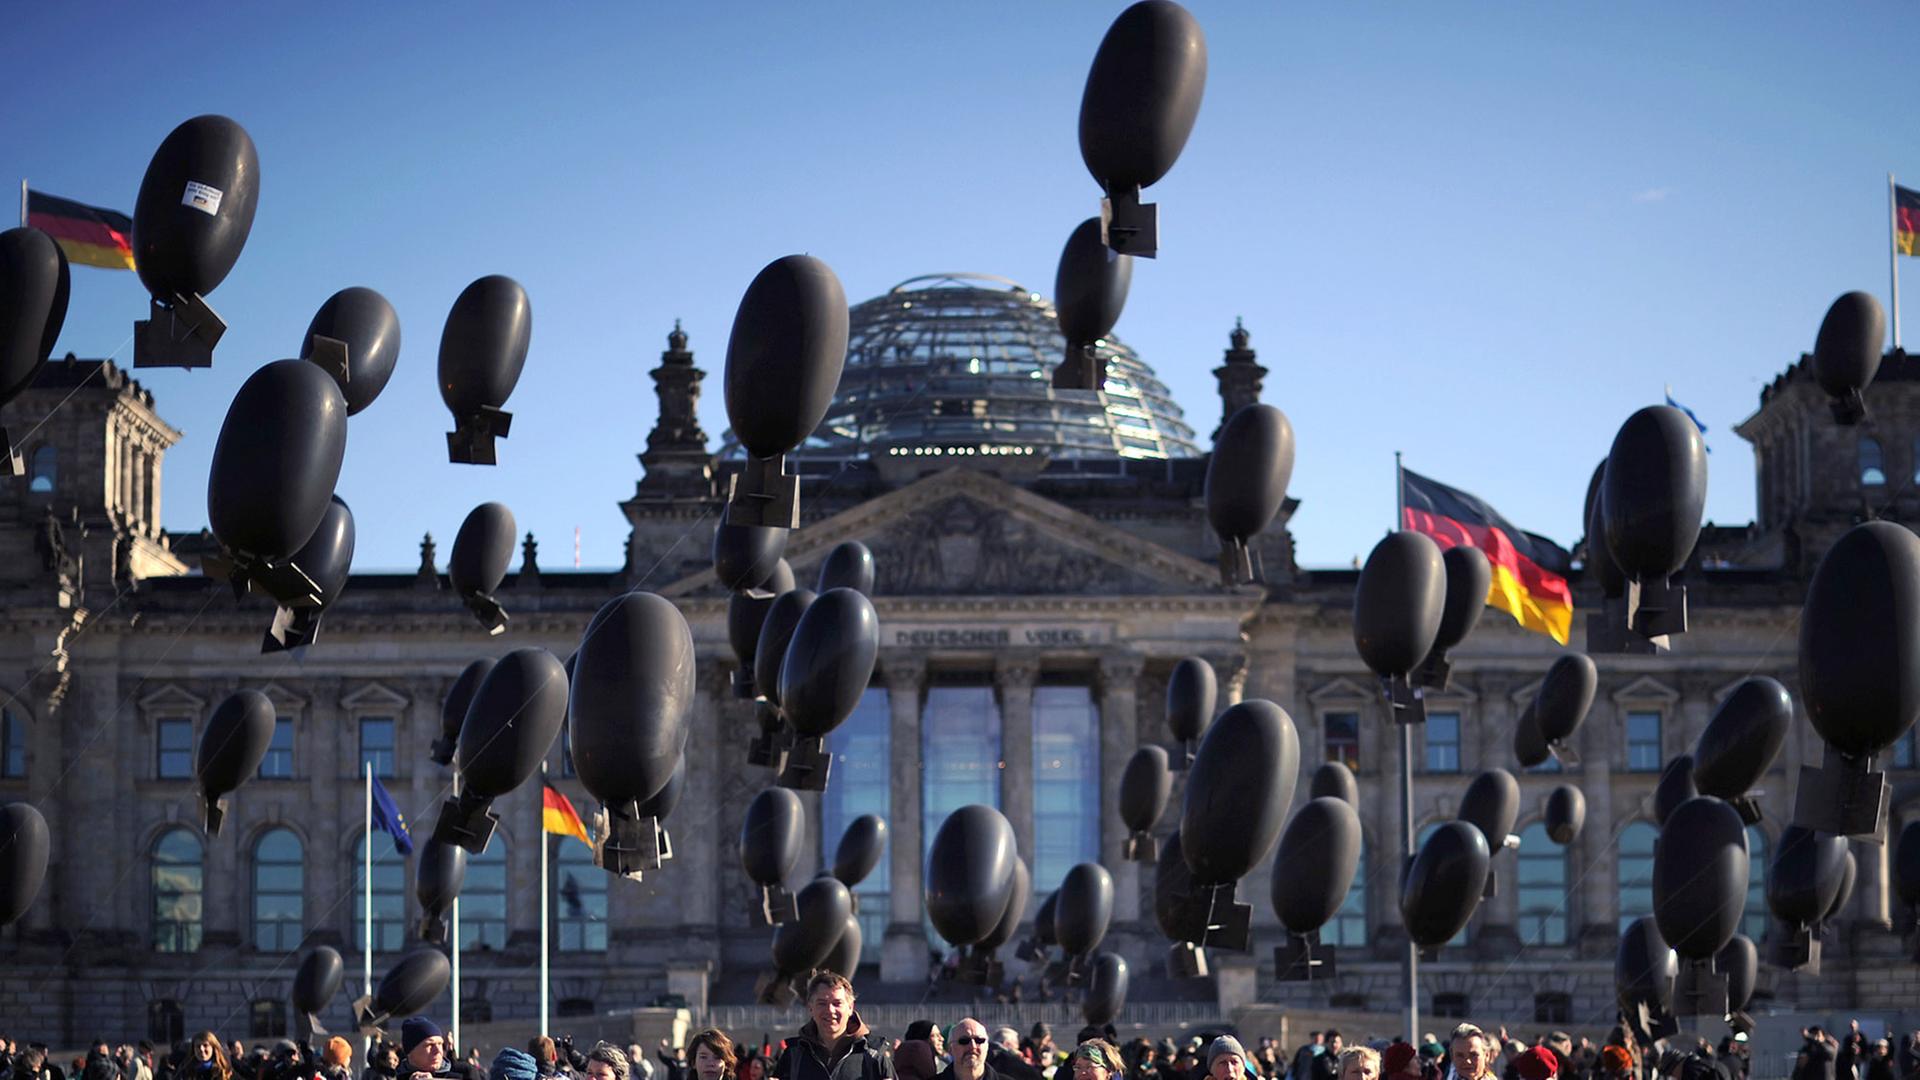 Aktivisten demonstrieren vor dem Reichstag in Berlin gegen deutsche Rüstungsexporte. Mit 100 bombenähnlichen, mit Helium gefüllten Ballons, soll bei der Kunstaktion die ausgehenden Rüstungsexporte symbolisiert werden.